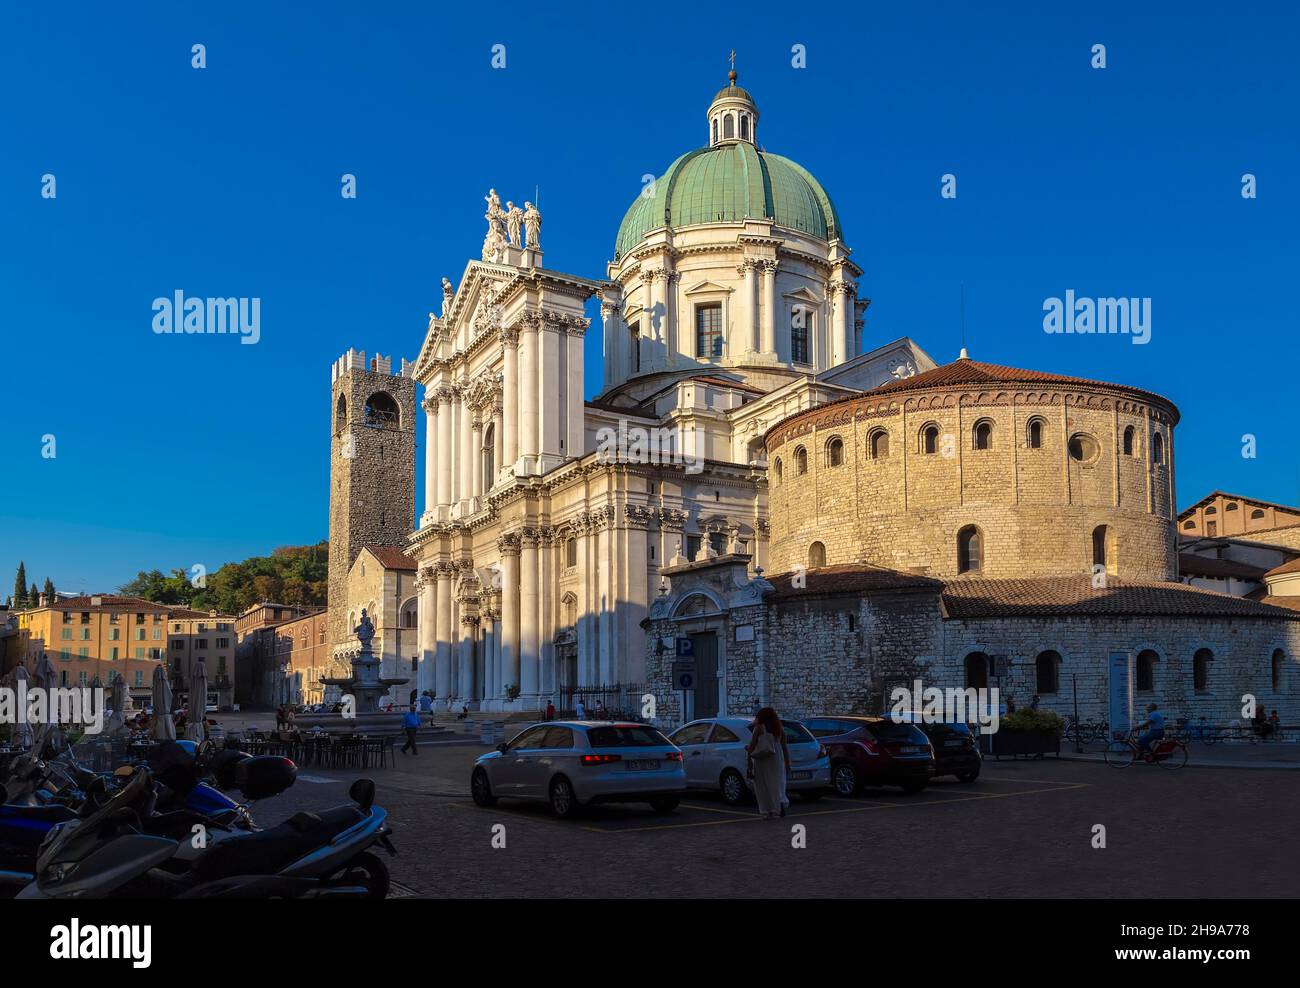 BRESCIA, ITALY - AUGUST 30, 2015: Cathedral of Santa Maria Assunta, Palazzo Broletto of Brescia. Italy. Stock Photo